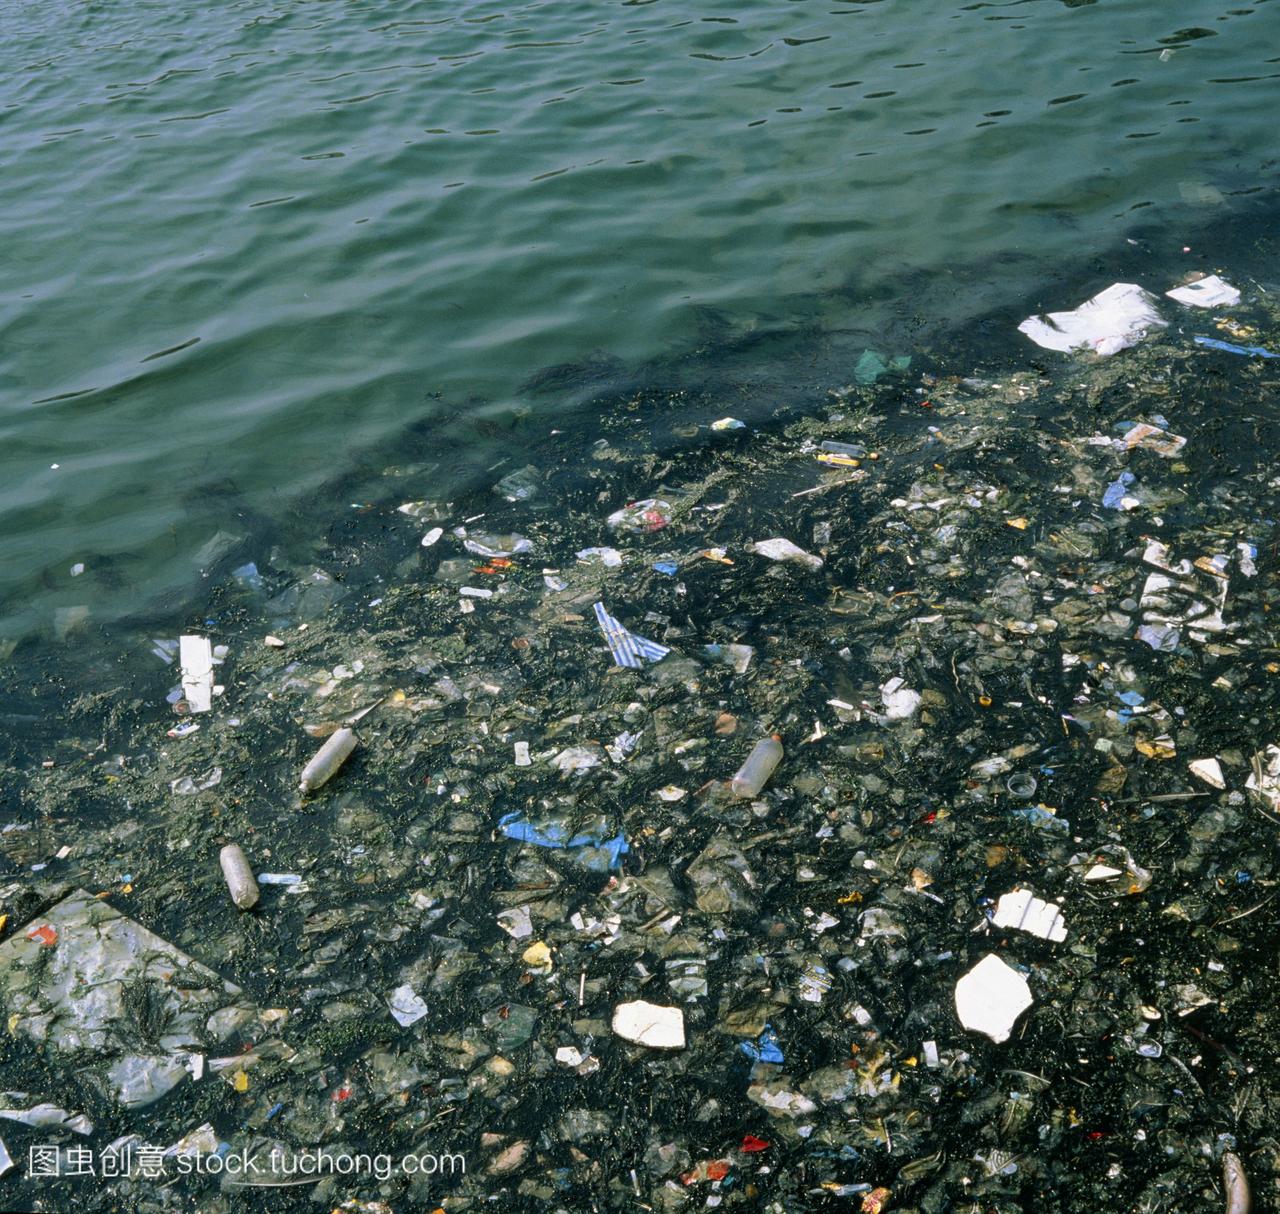 近海海洋污染。一层垃圾漂浮在海水。垃圾主要